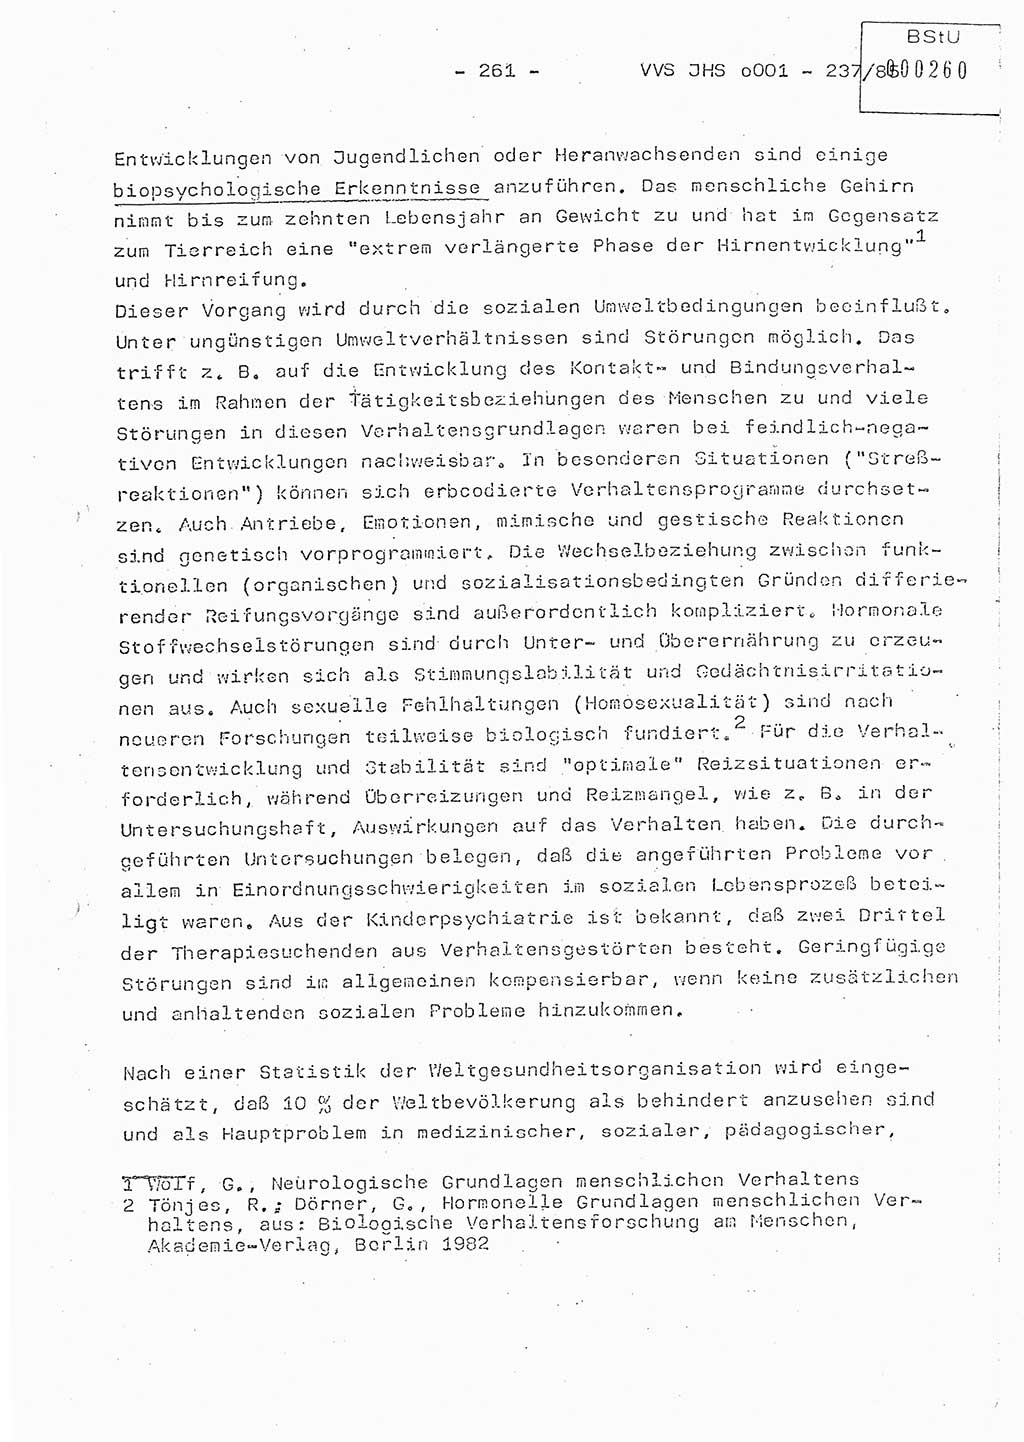 Dissertation Oberstleutnant Peter Jakulski (JHS), Oberstleutnat Christian Rudolph (HA Ⅸ), Major Horst Böttger (ZMD), Major Wolfgang Grüneberg (JHS), Major Albert Meutsch (JHS), Ministerium für Staatssicherheit (MfS) [Deutsche Demokratische Republik (DDR)], Juristische Hochschule (JHS), Vertrauliche Verschlußsache (VVS) o001-237/85, Potsdam 1985, Seite 261 (Diss. MfS DDR JHS VVS o001-237/85 1985, S. 261)